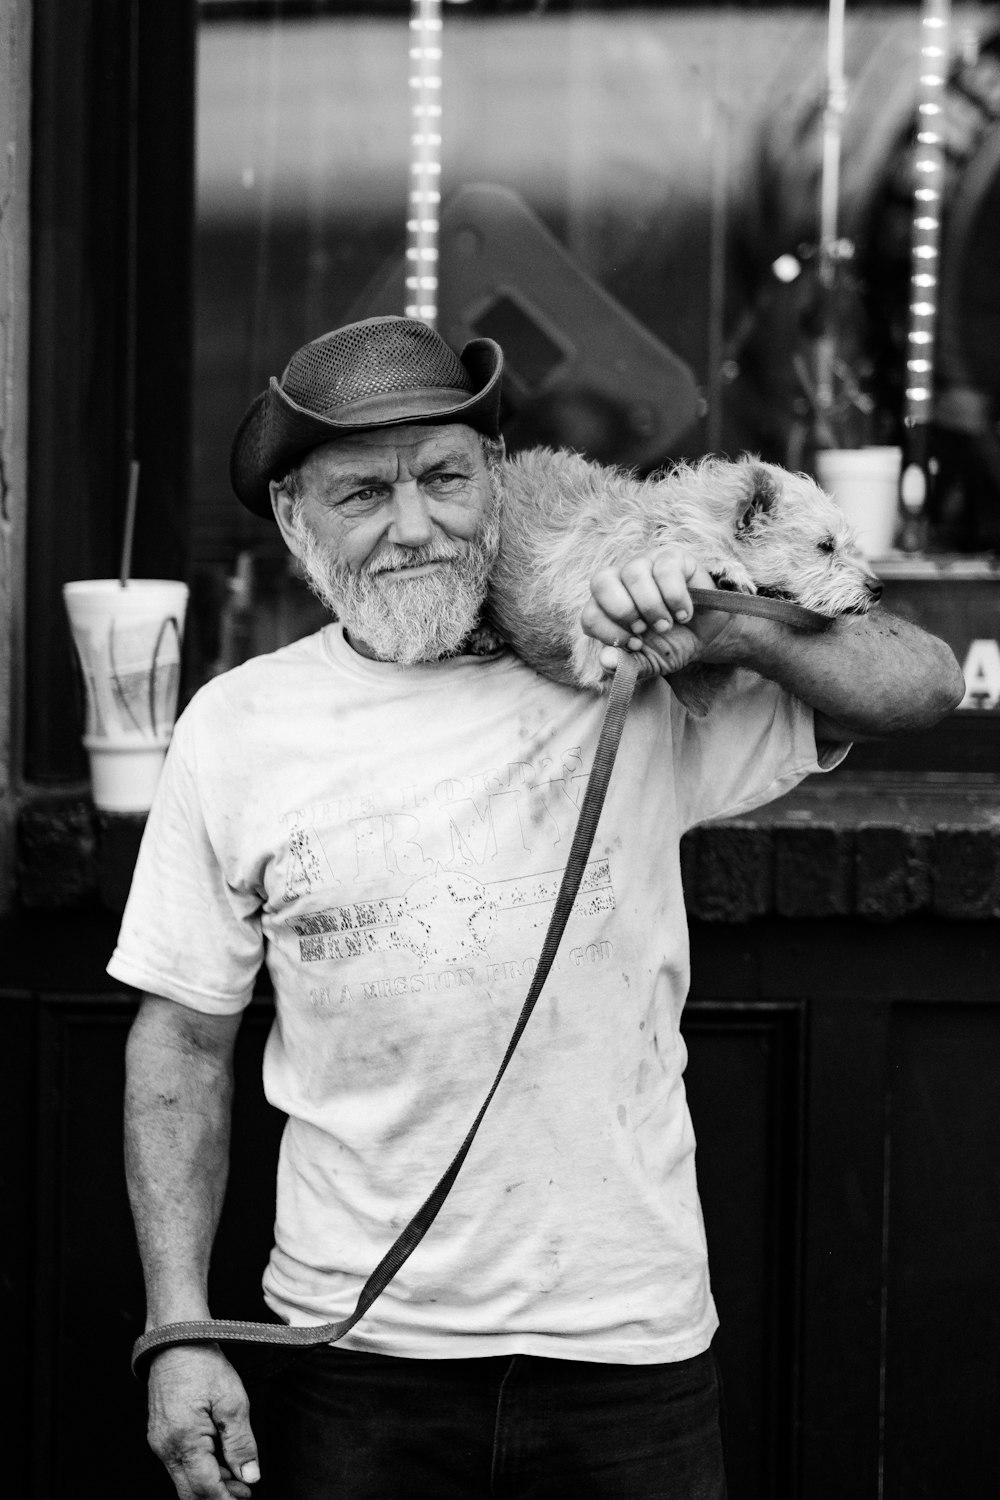 fotografia in scala di grigi di un uomo che trasporta un cane